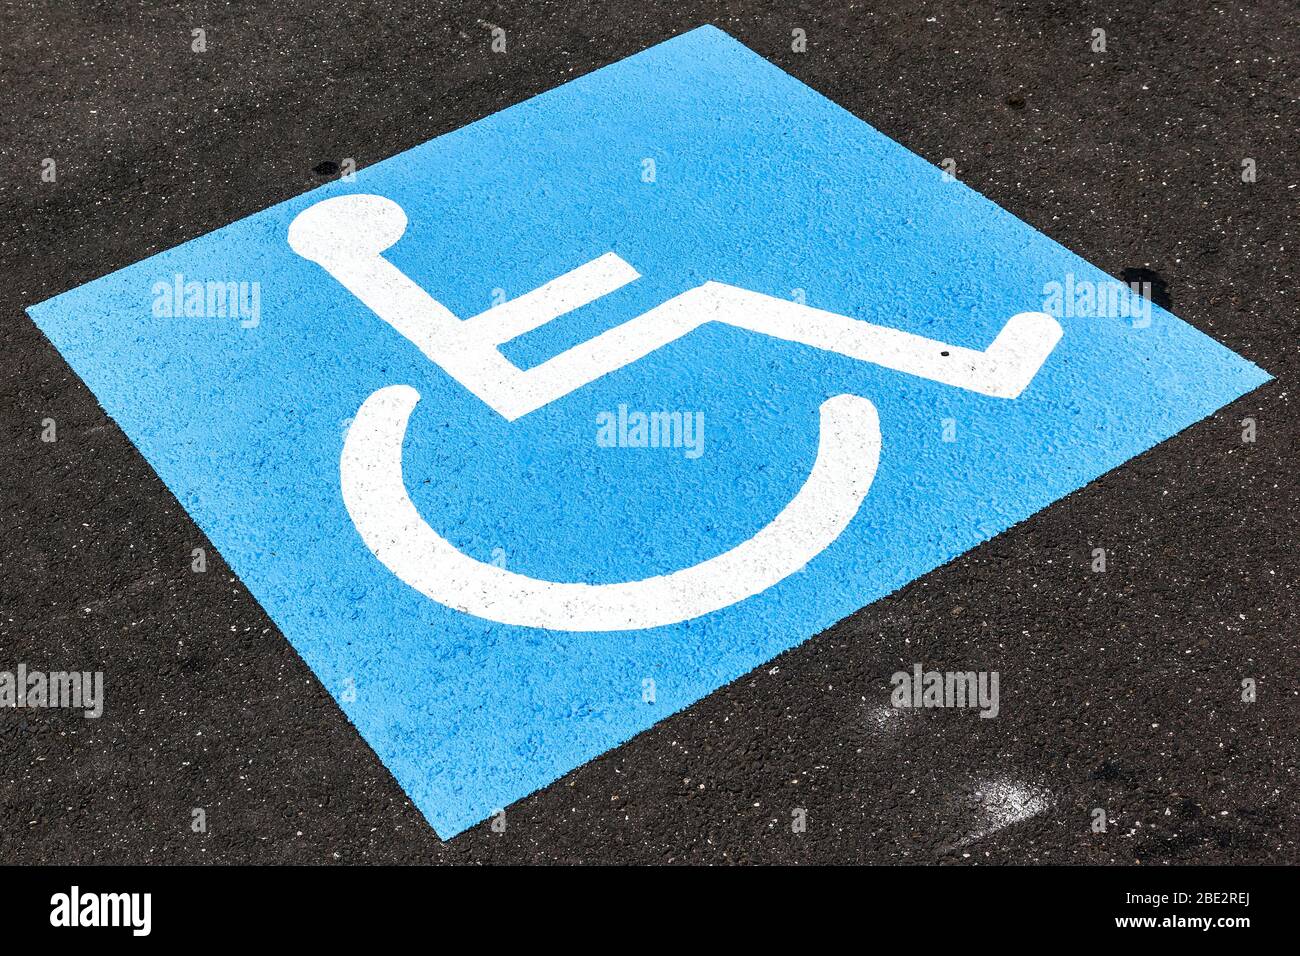 Ein Behindertenzeichen auf grauem asfalto Foto Stock